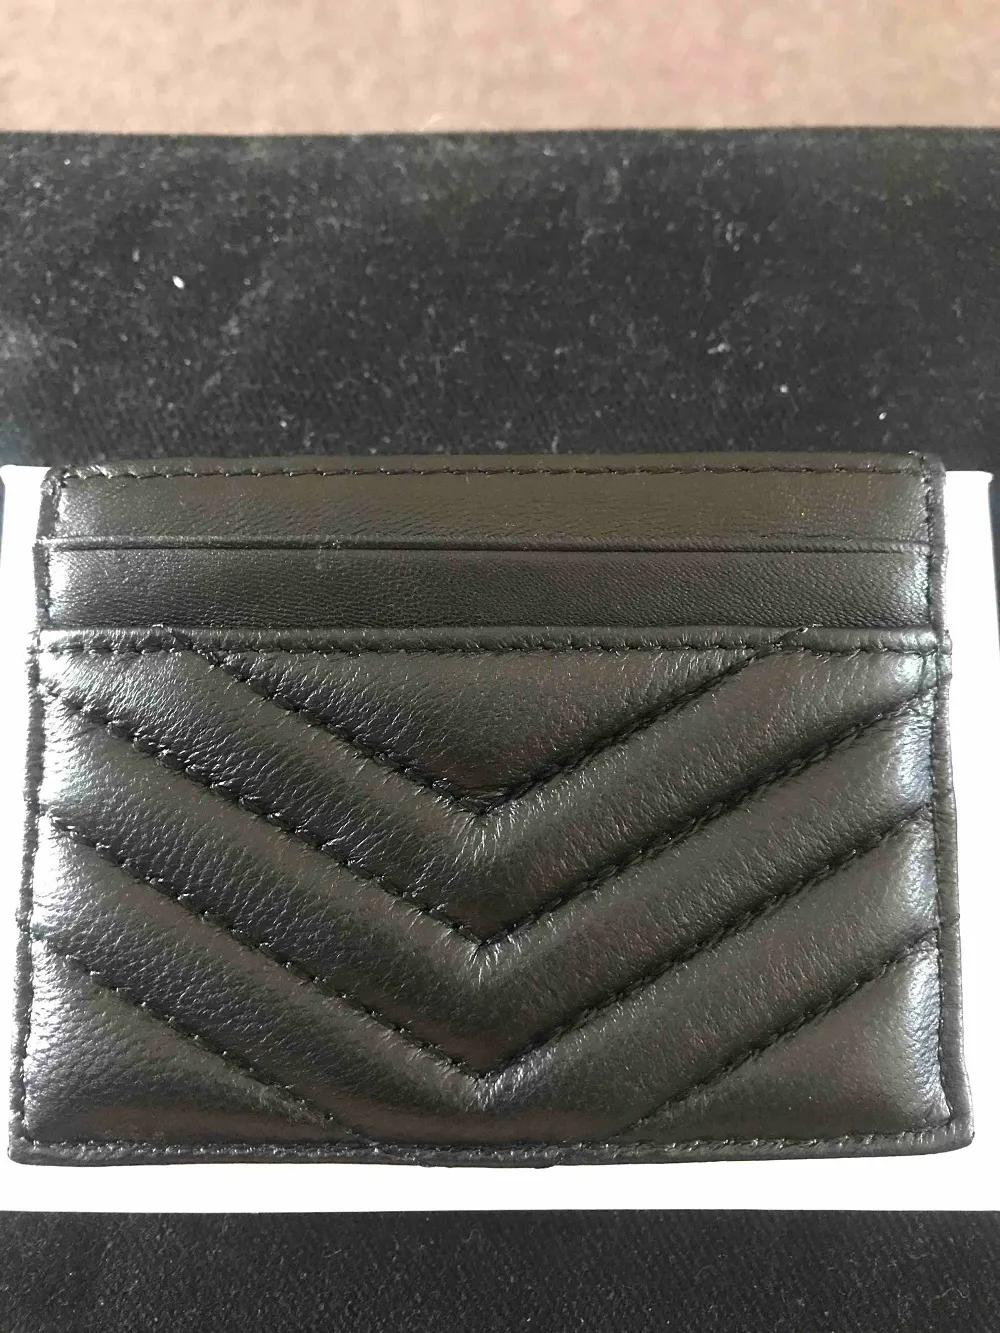 Titular de cartões de moda masculino masculino portadores de cartão preto mini carteiras de moedas bolso bolso slot slot bolso genuíno leath1907